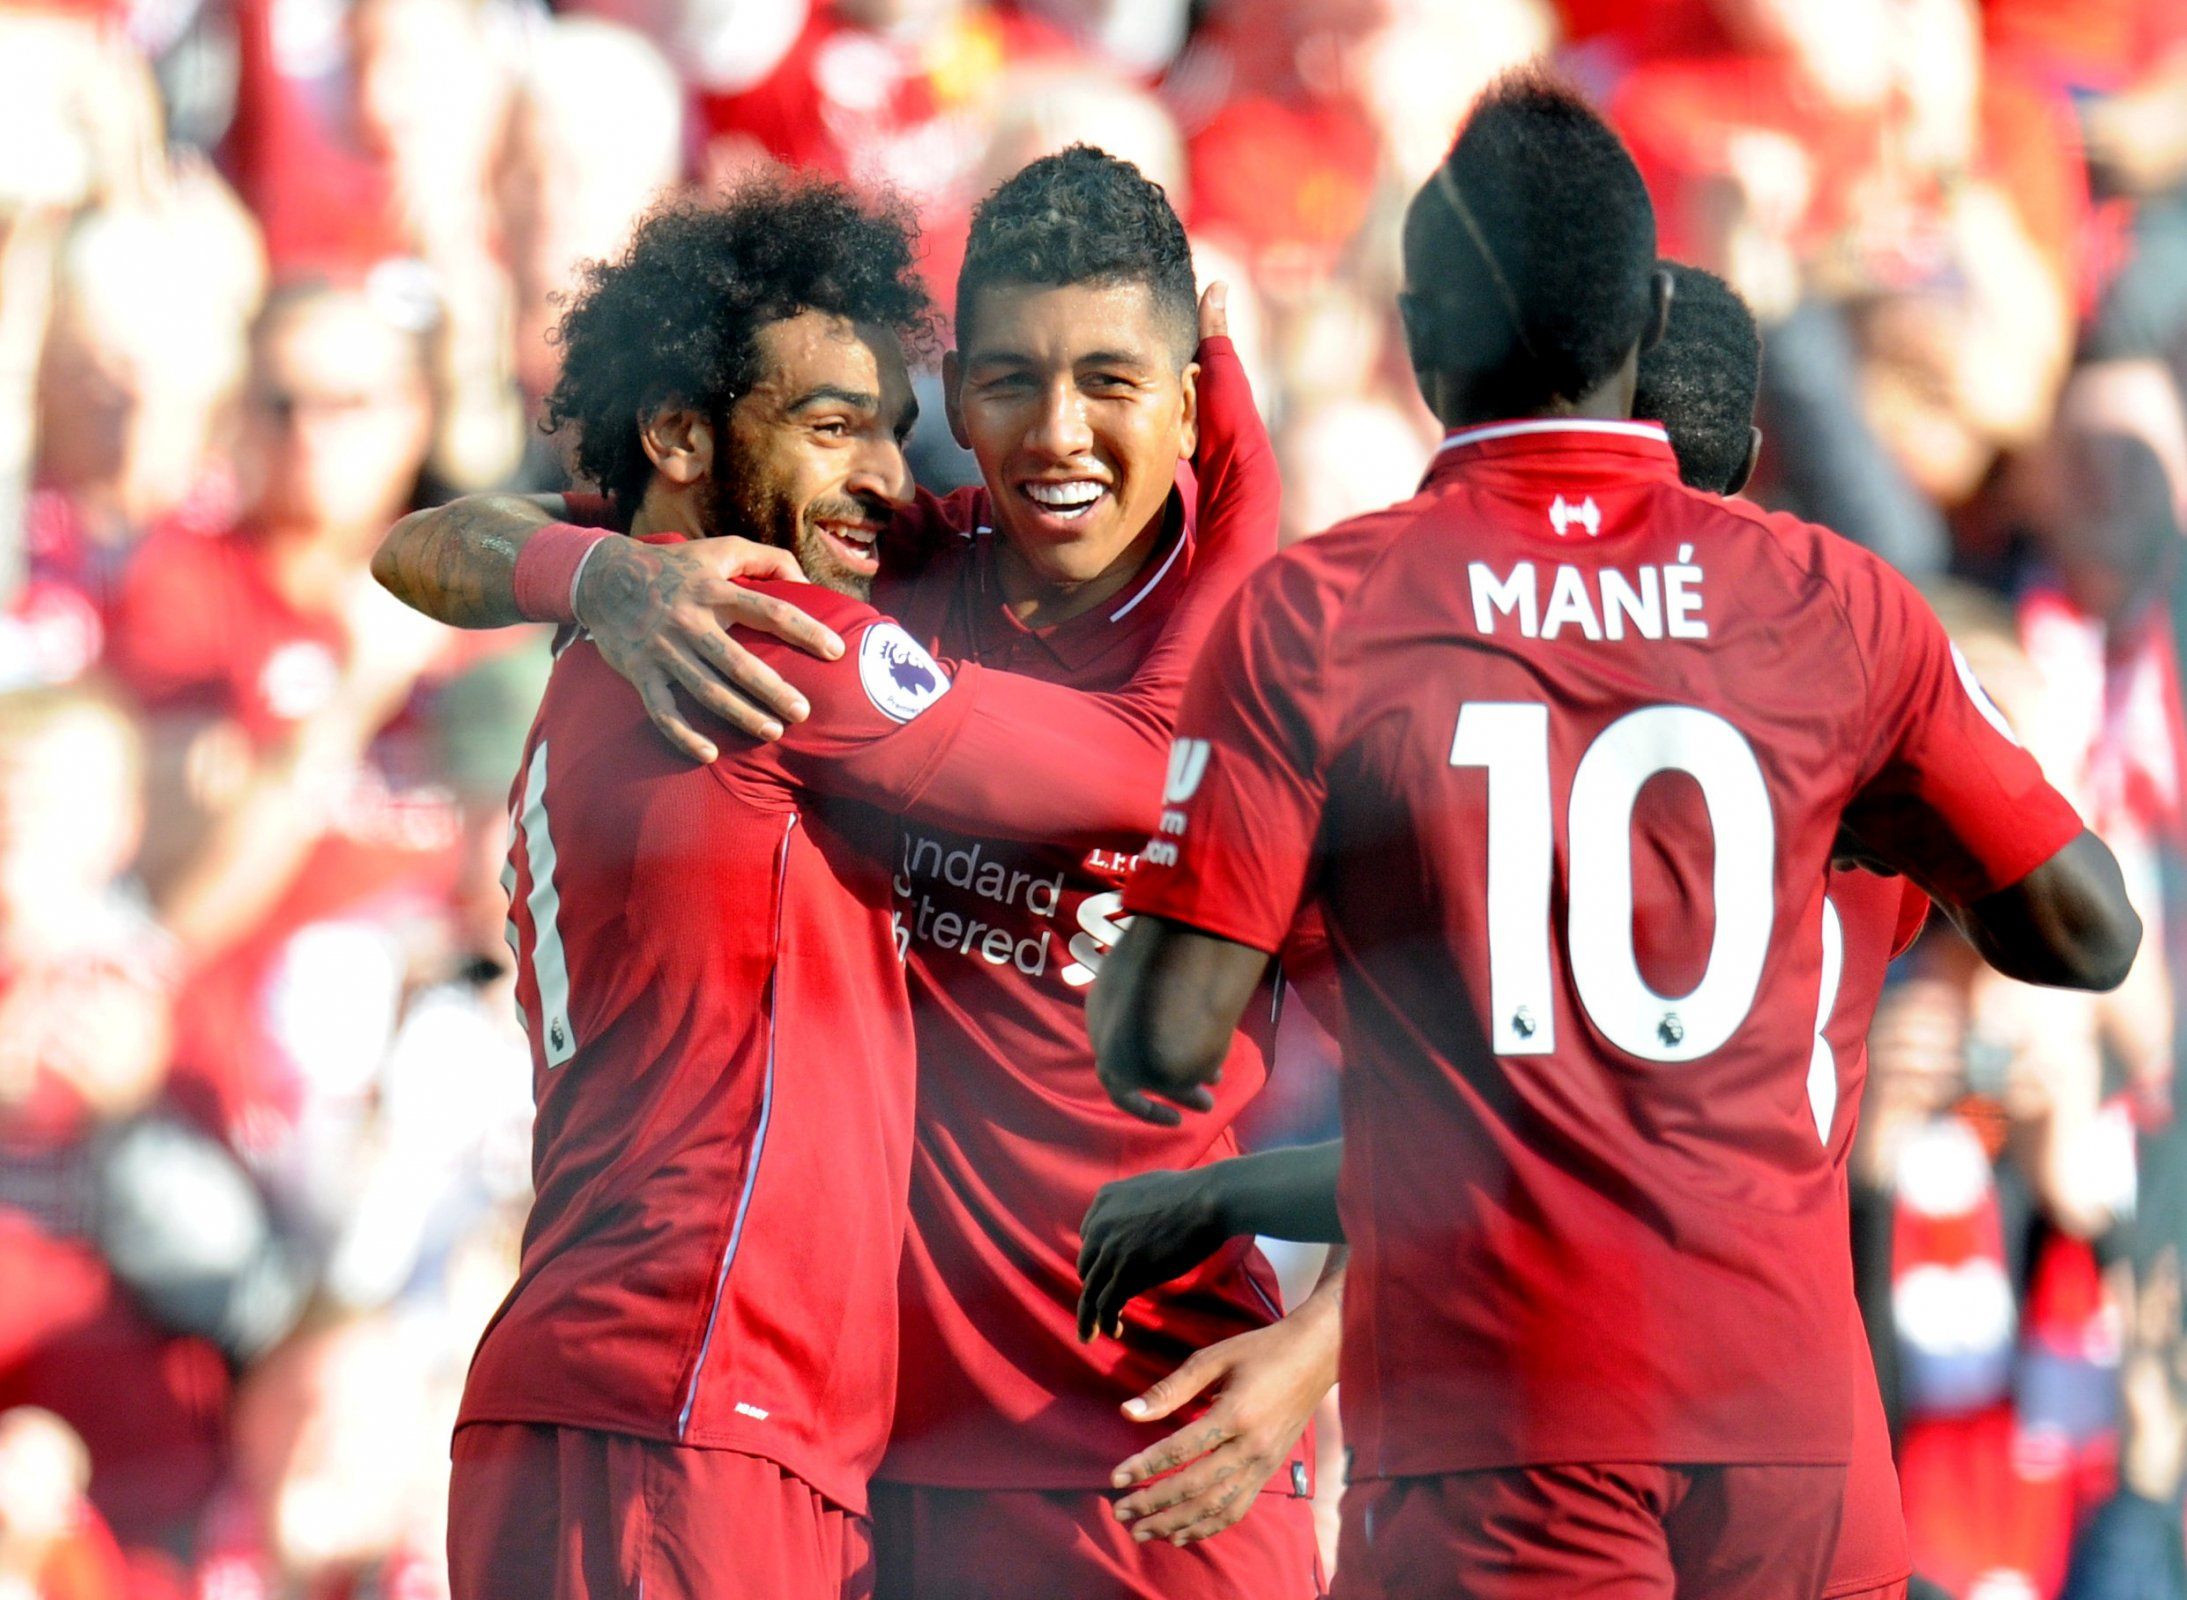 Mohamed Salah, Sadio Mane and Roberto Firmino celebrate scoring